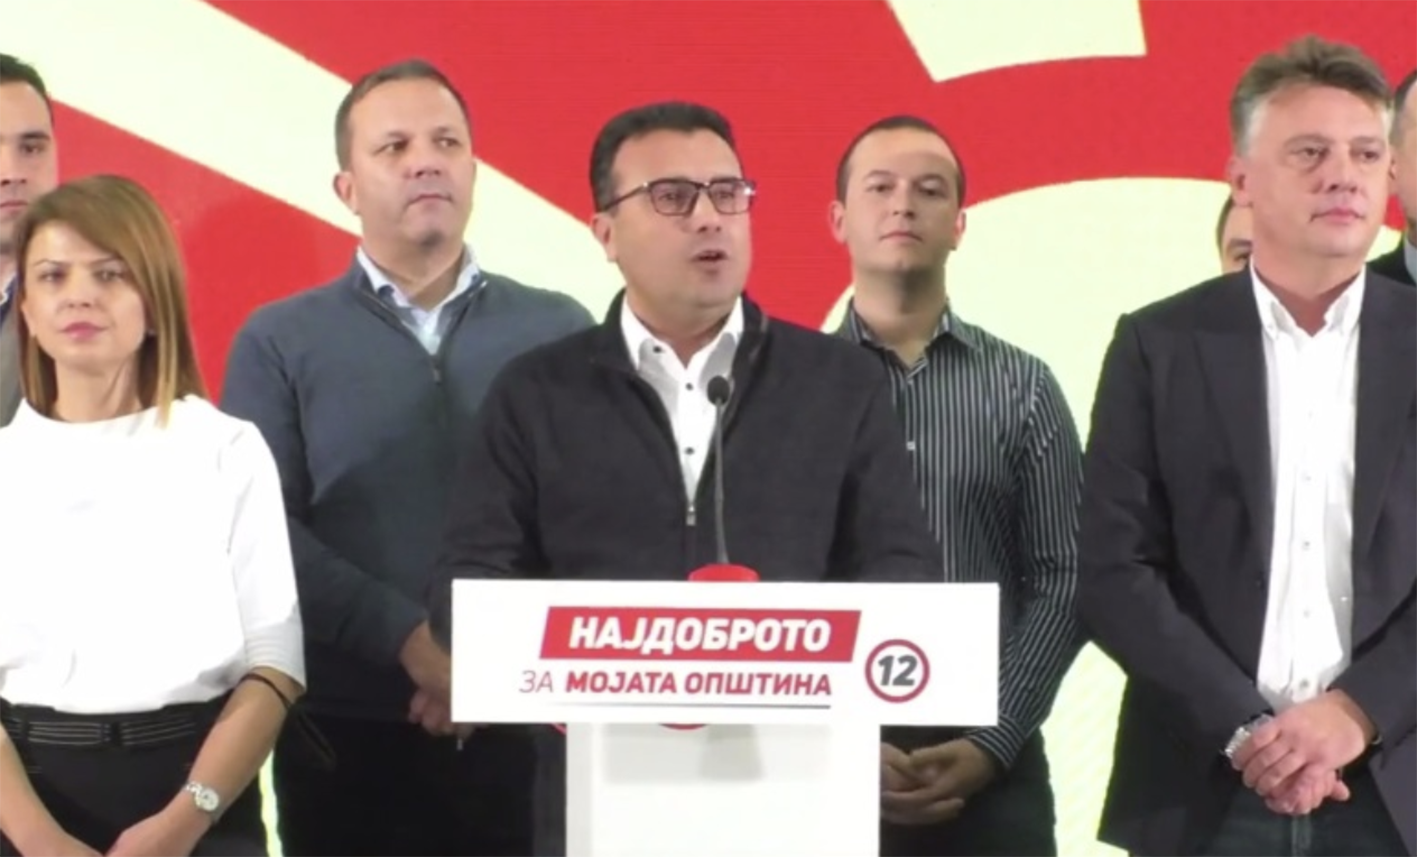 Παραιτήθηκε ο Zaev από Πρωθυπουργός και Πρόεδρος του Σοσιαλιστικού Κόμματος μετά την νέα ήττα και στο δεύτερο γύρο των δημοτικών εκλογών